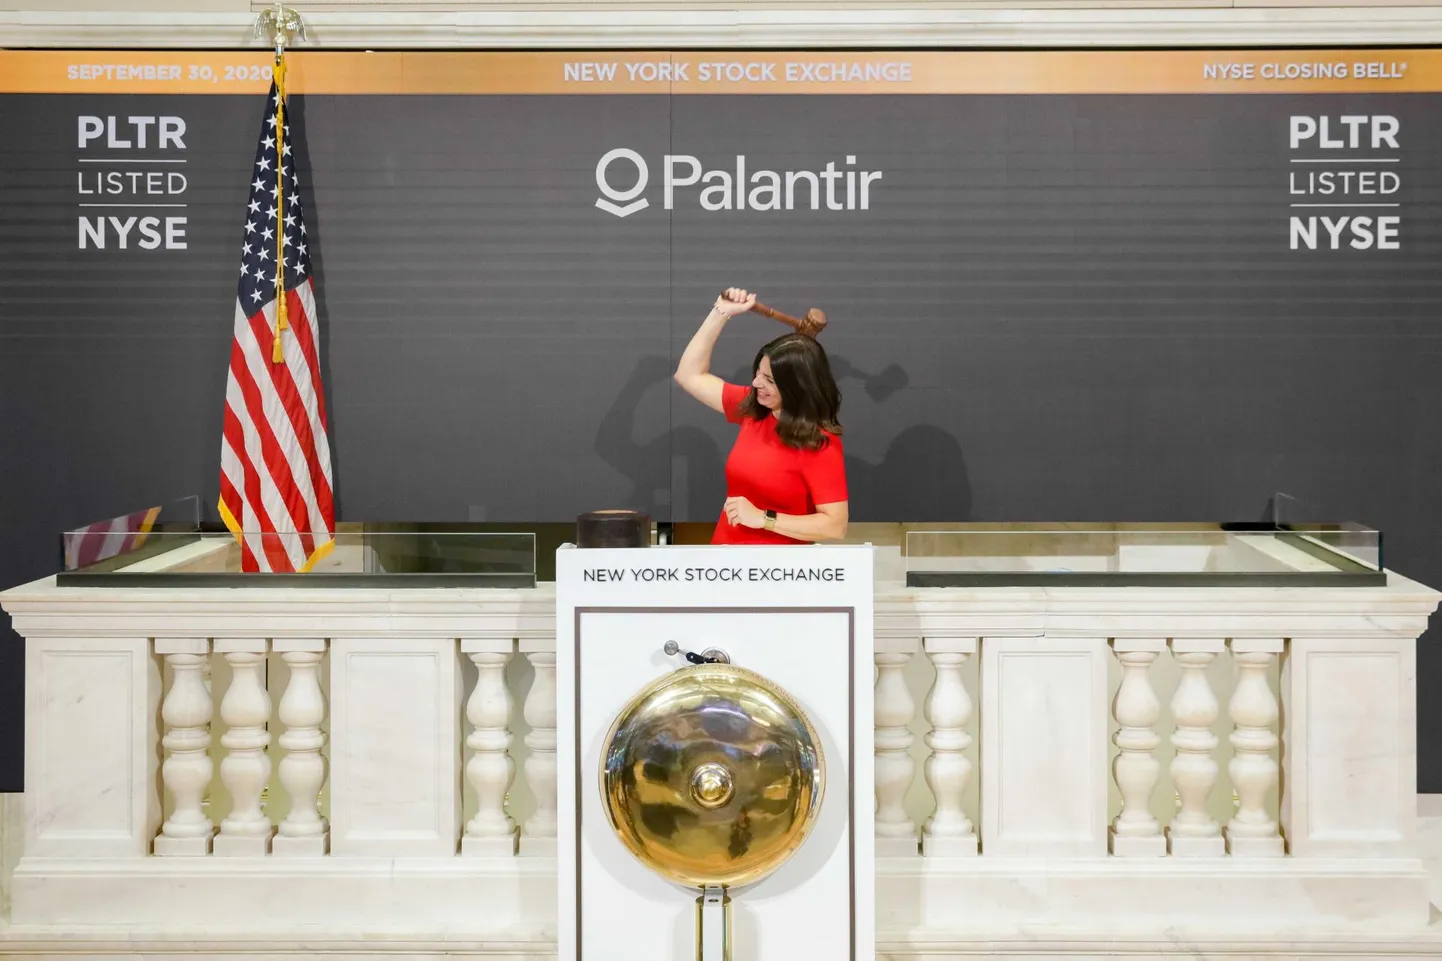 New Yorgi börsi juht lööb Palantirile börsikella. 